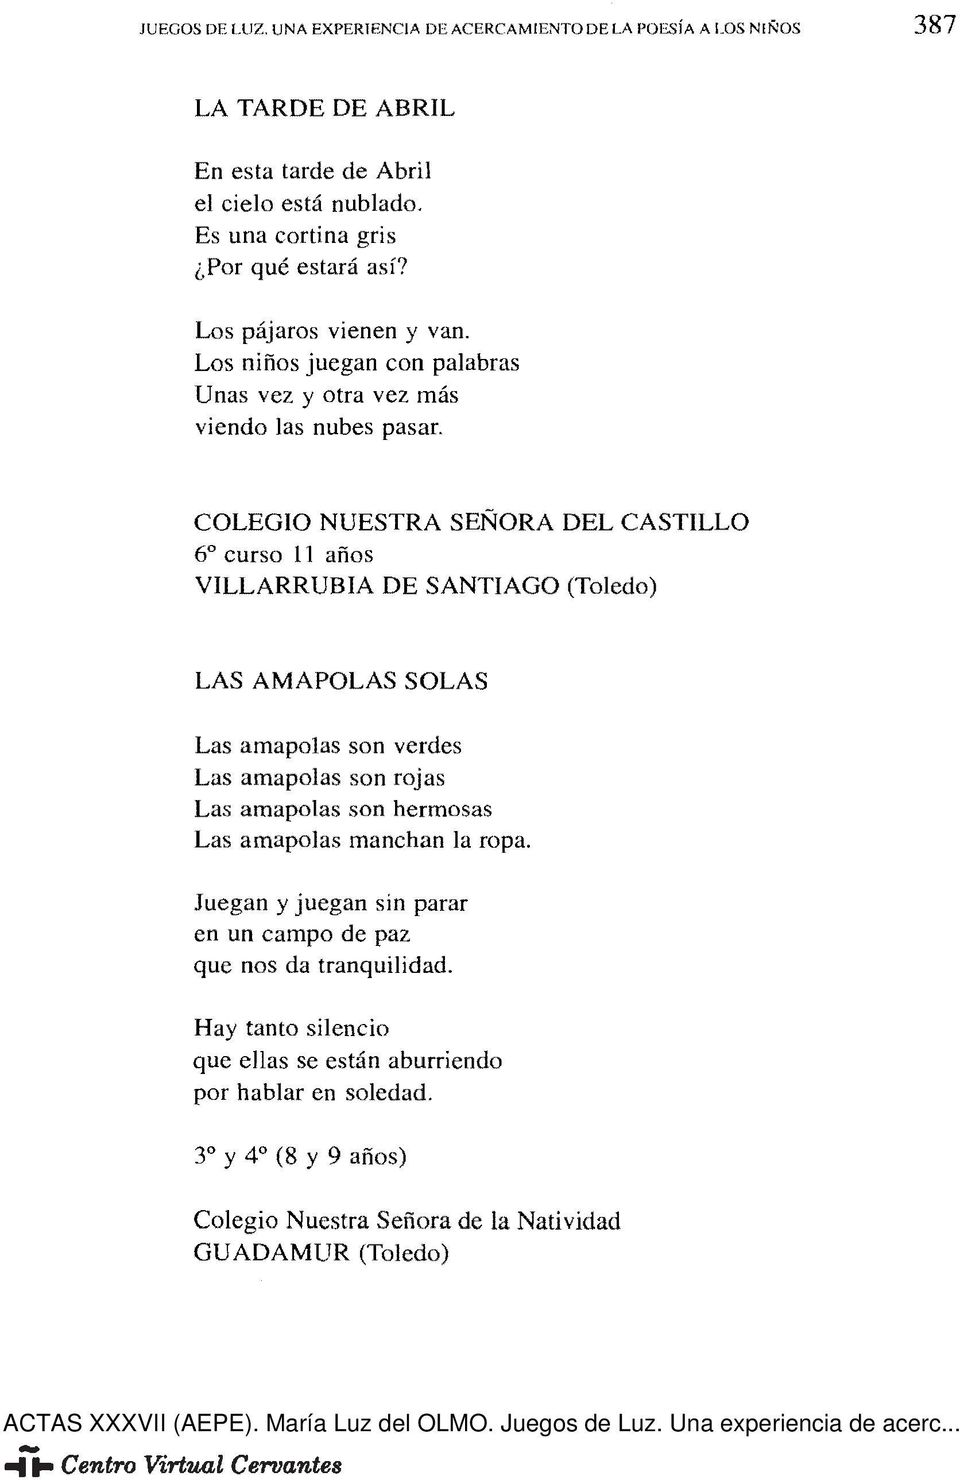 COLEGIO NUESTRA SEÑORA DEL CASTILLO 6 curso 11 años VILLARRUBIA DE SANTIAGO (Toledo) LAS AMAPOLAS SOLAS Las amapolas son verdes Las amapolas son rojas Las amapolas son hermosas